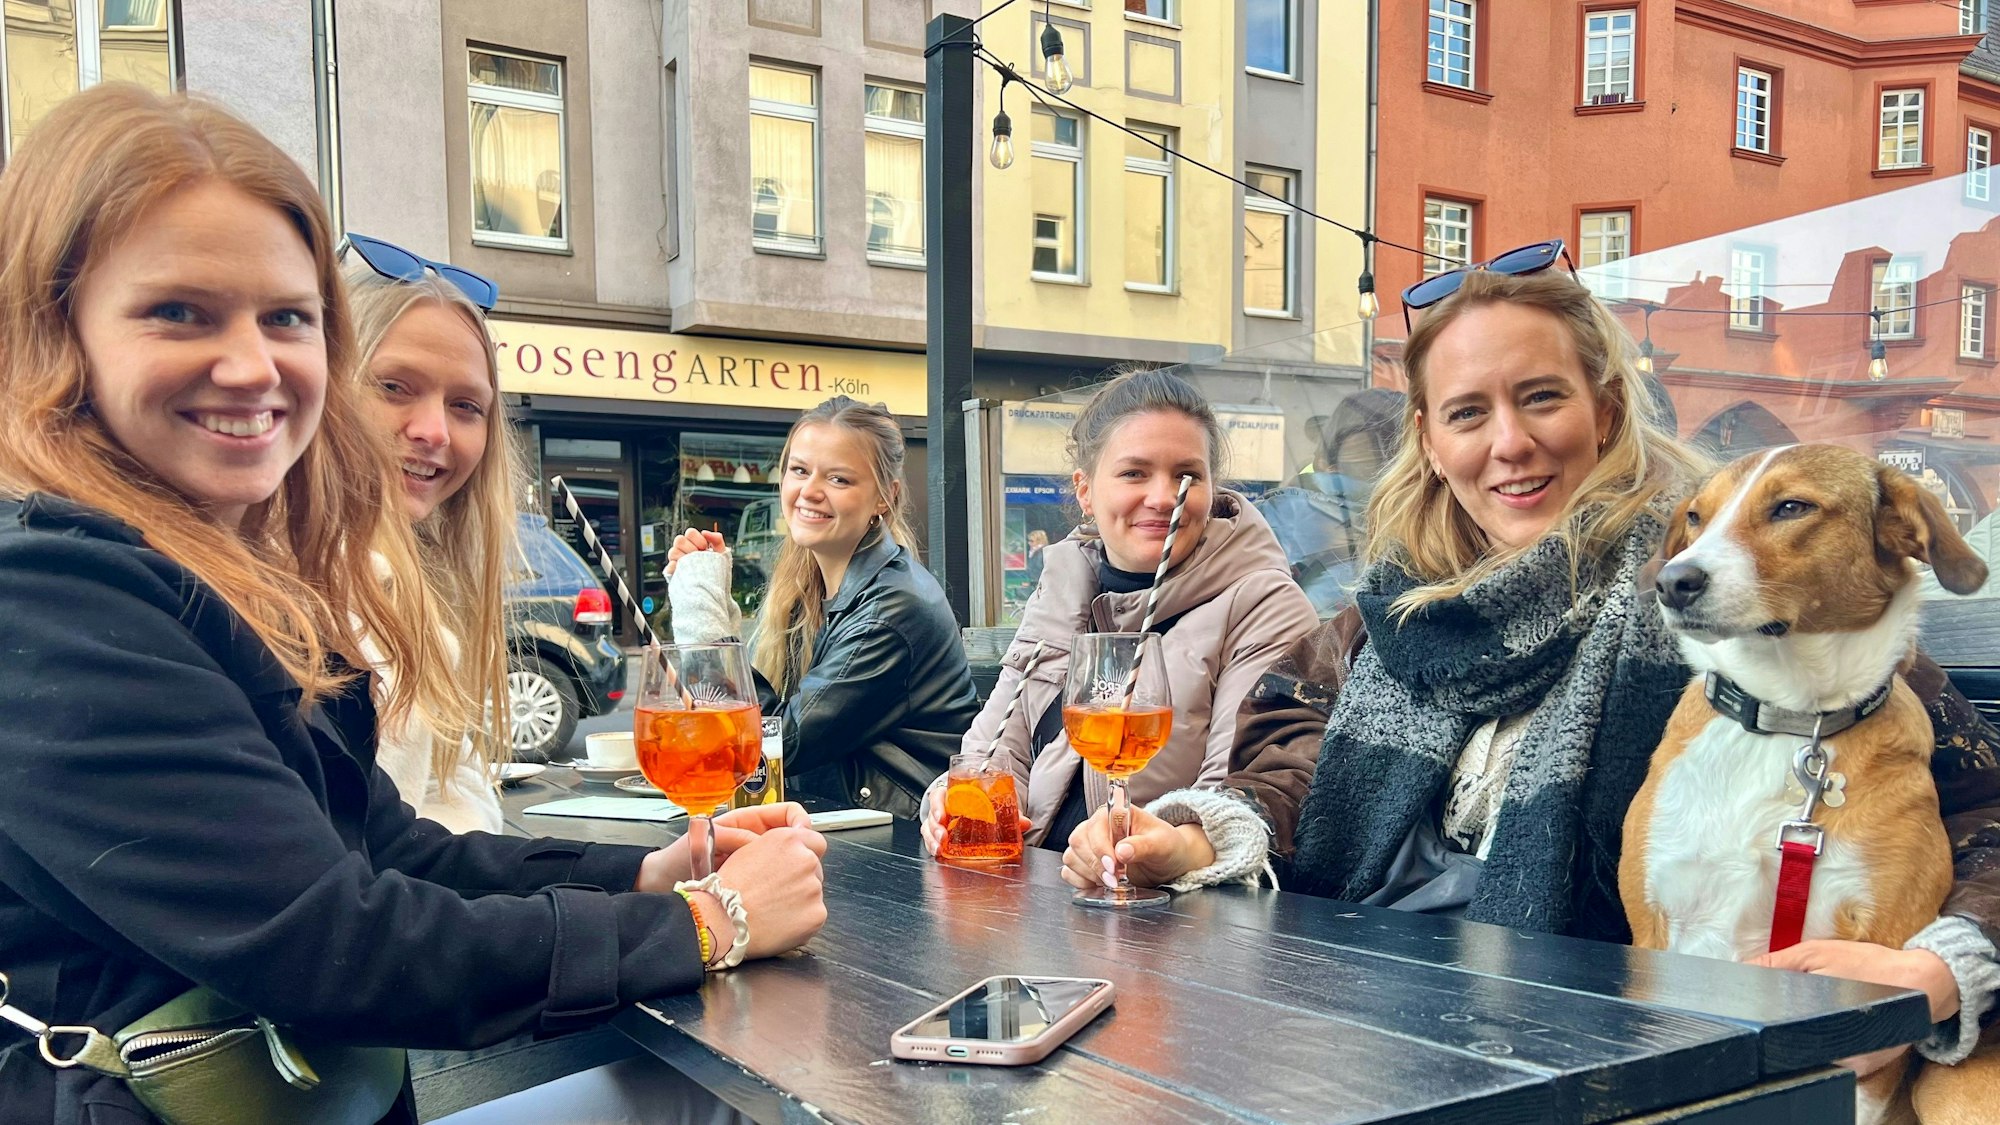 Fünf junge Frauen im Straßenlokal trinken Aperol